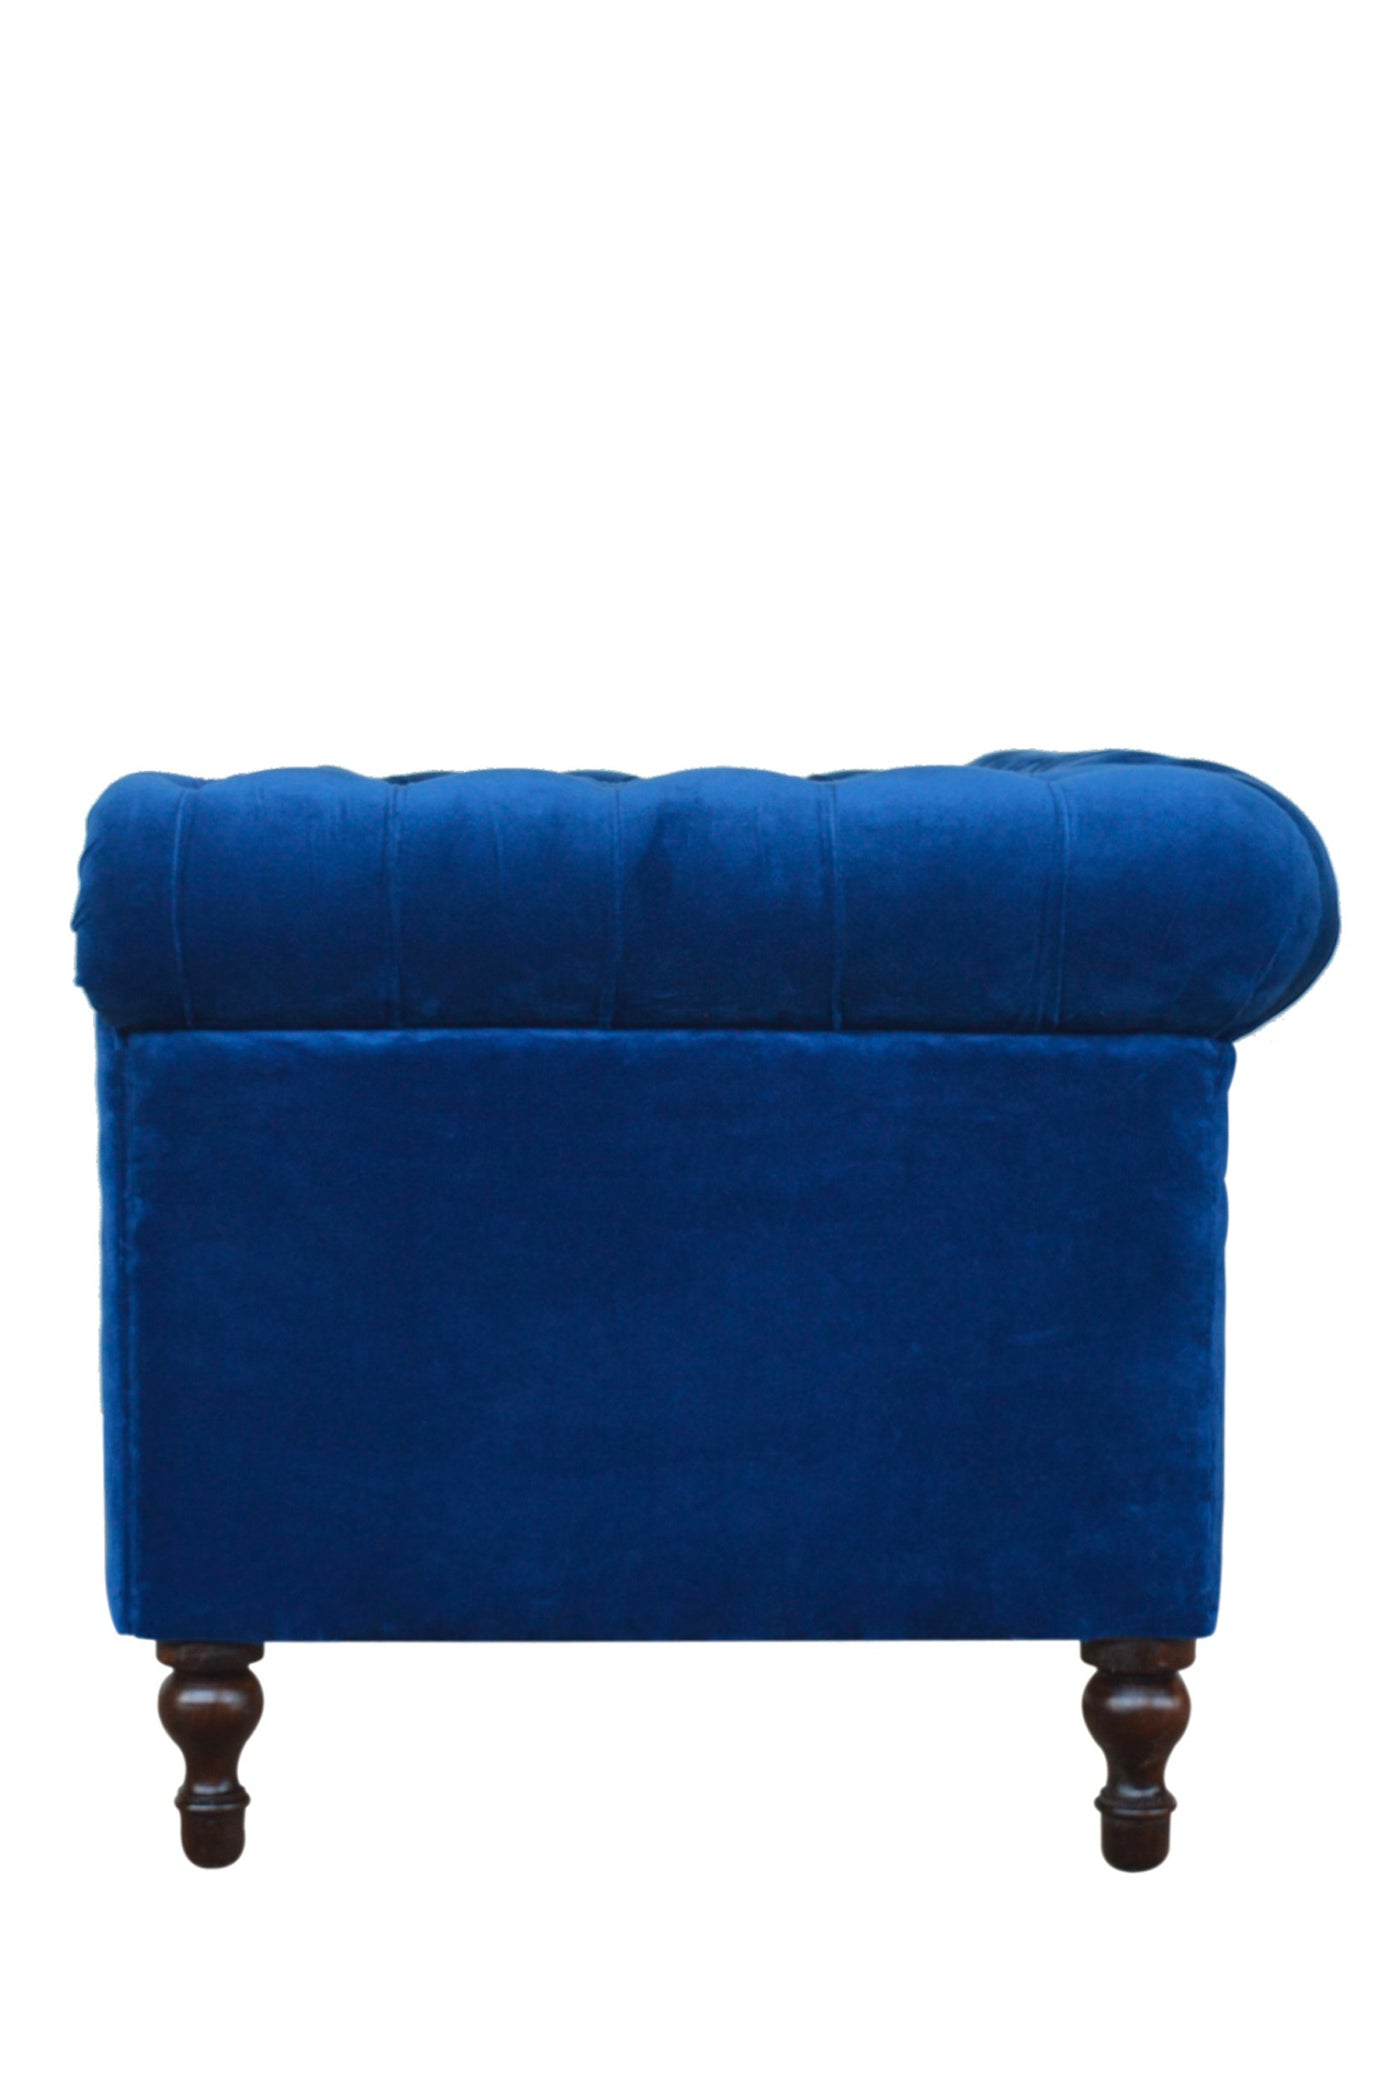 Pimlico - Sofa Royal Blue 2 Seater